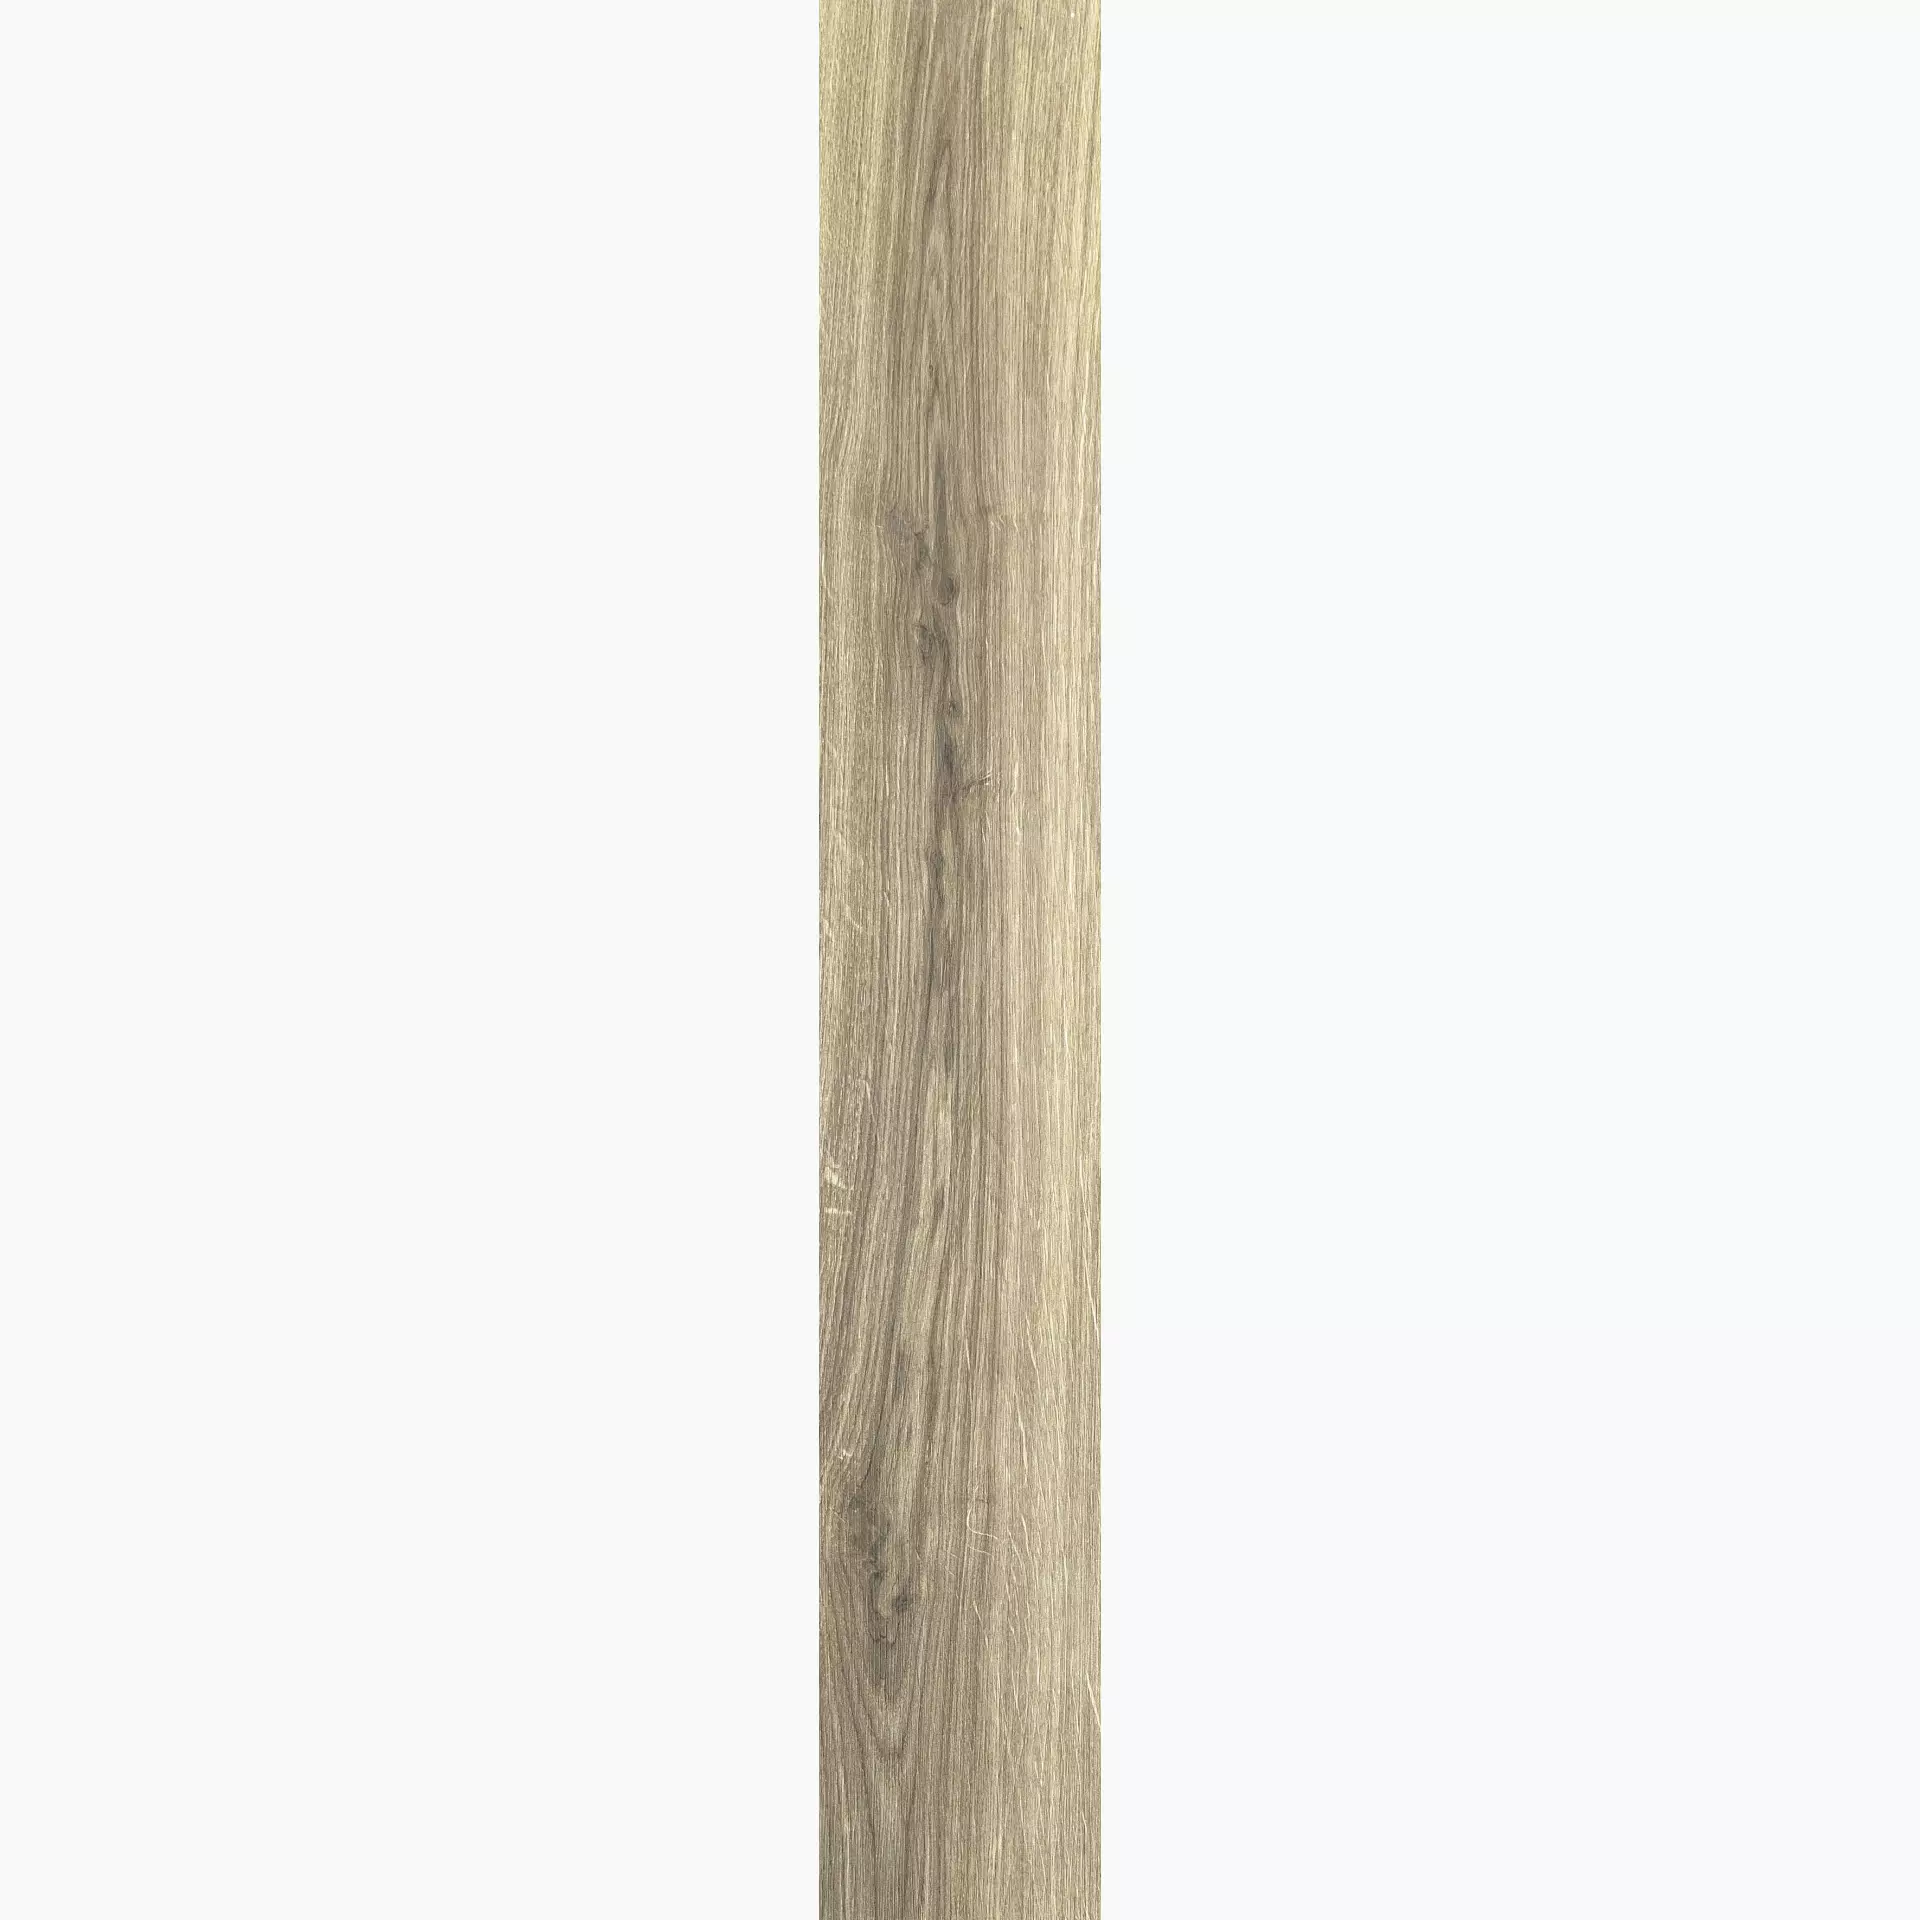 Florim Planches De Rex Miele Naturale – Matt Miele 755694 matt natur 26,5x180cm rektifiziert 9mm